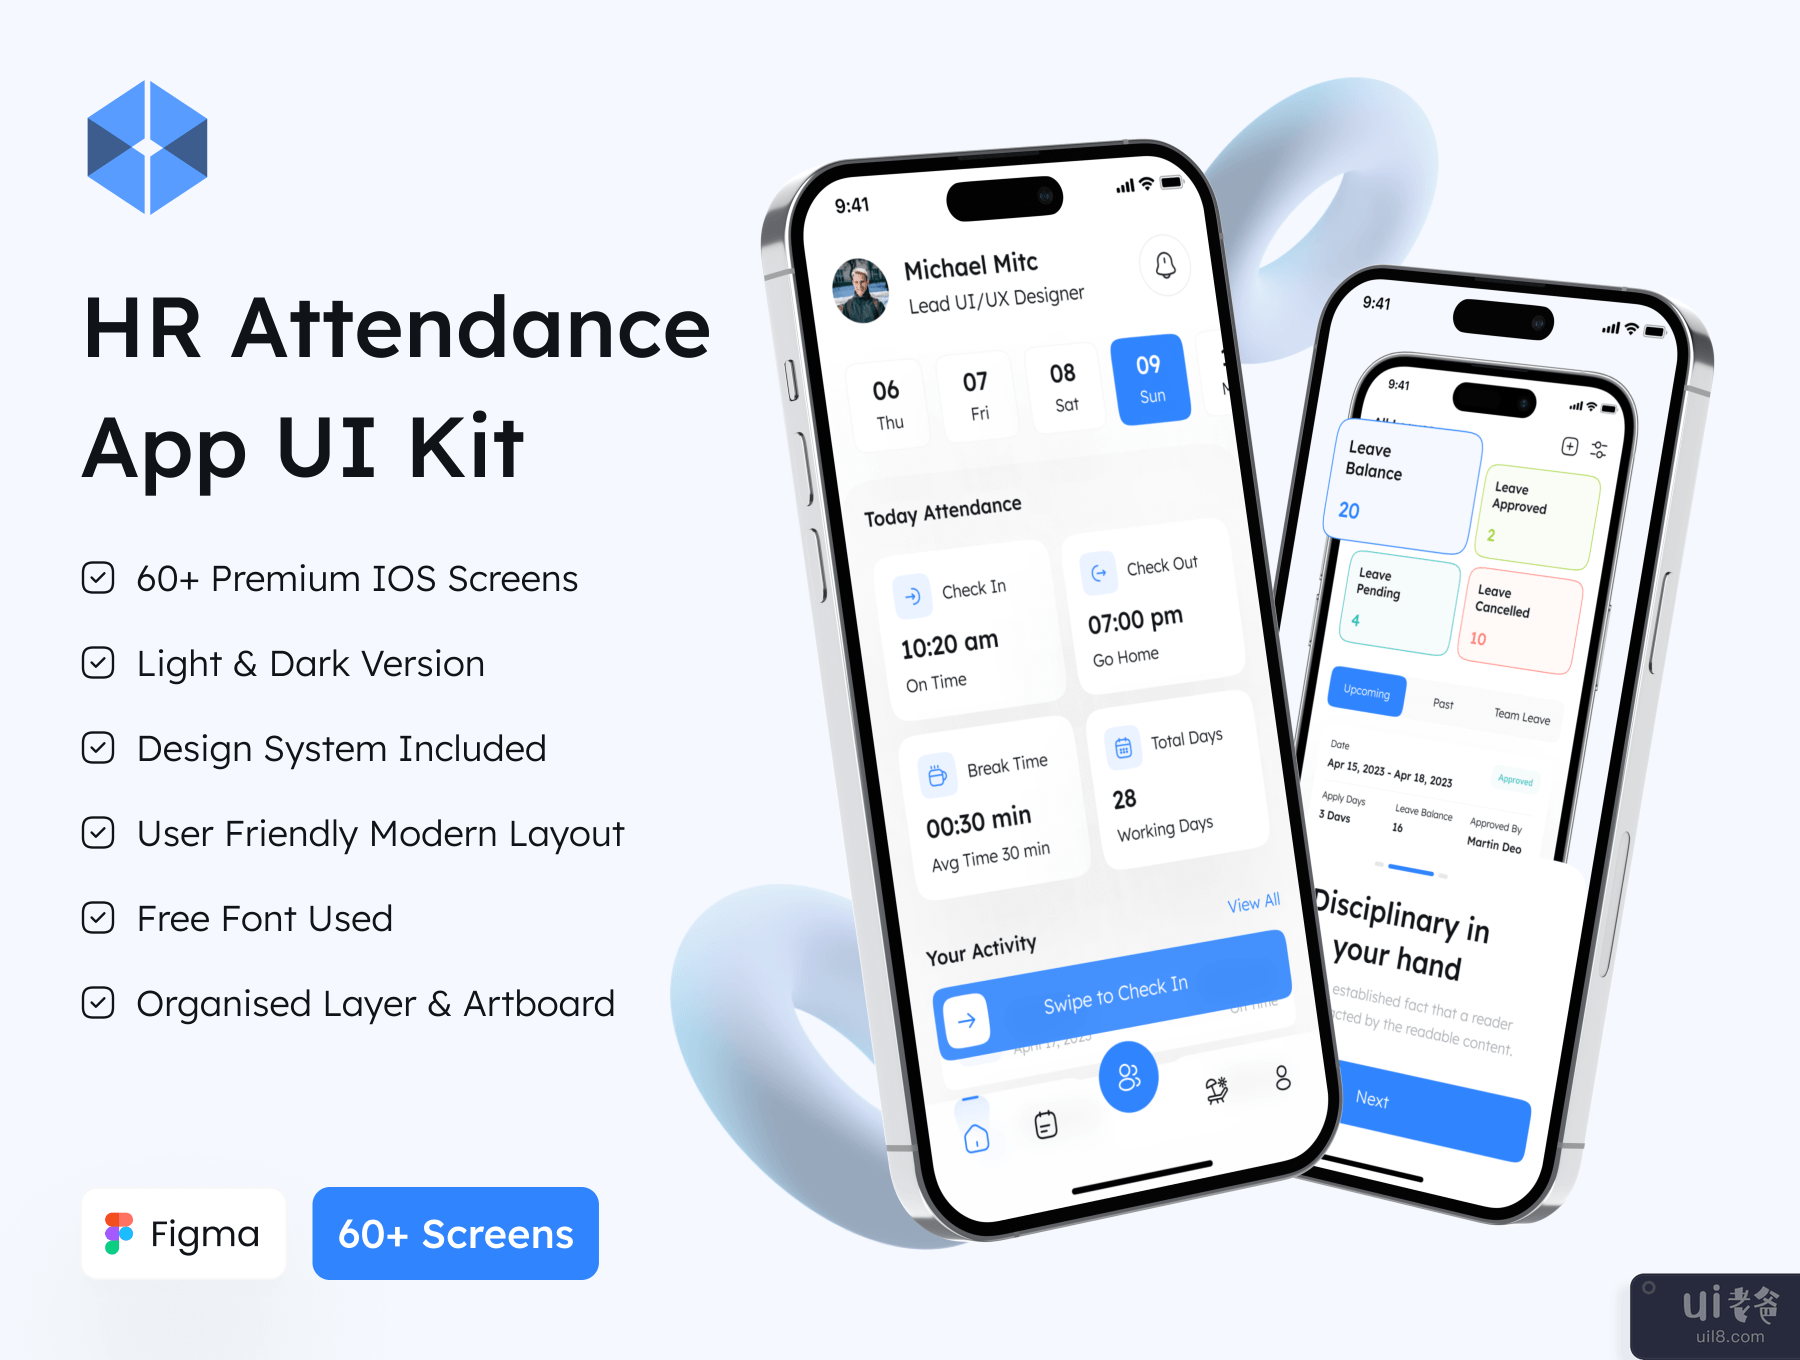 人力资源考勤应用程序 UI 工具包 (HR Attendance App UI Kit)插图7